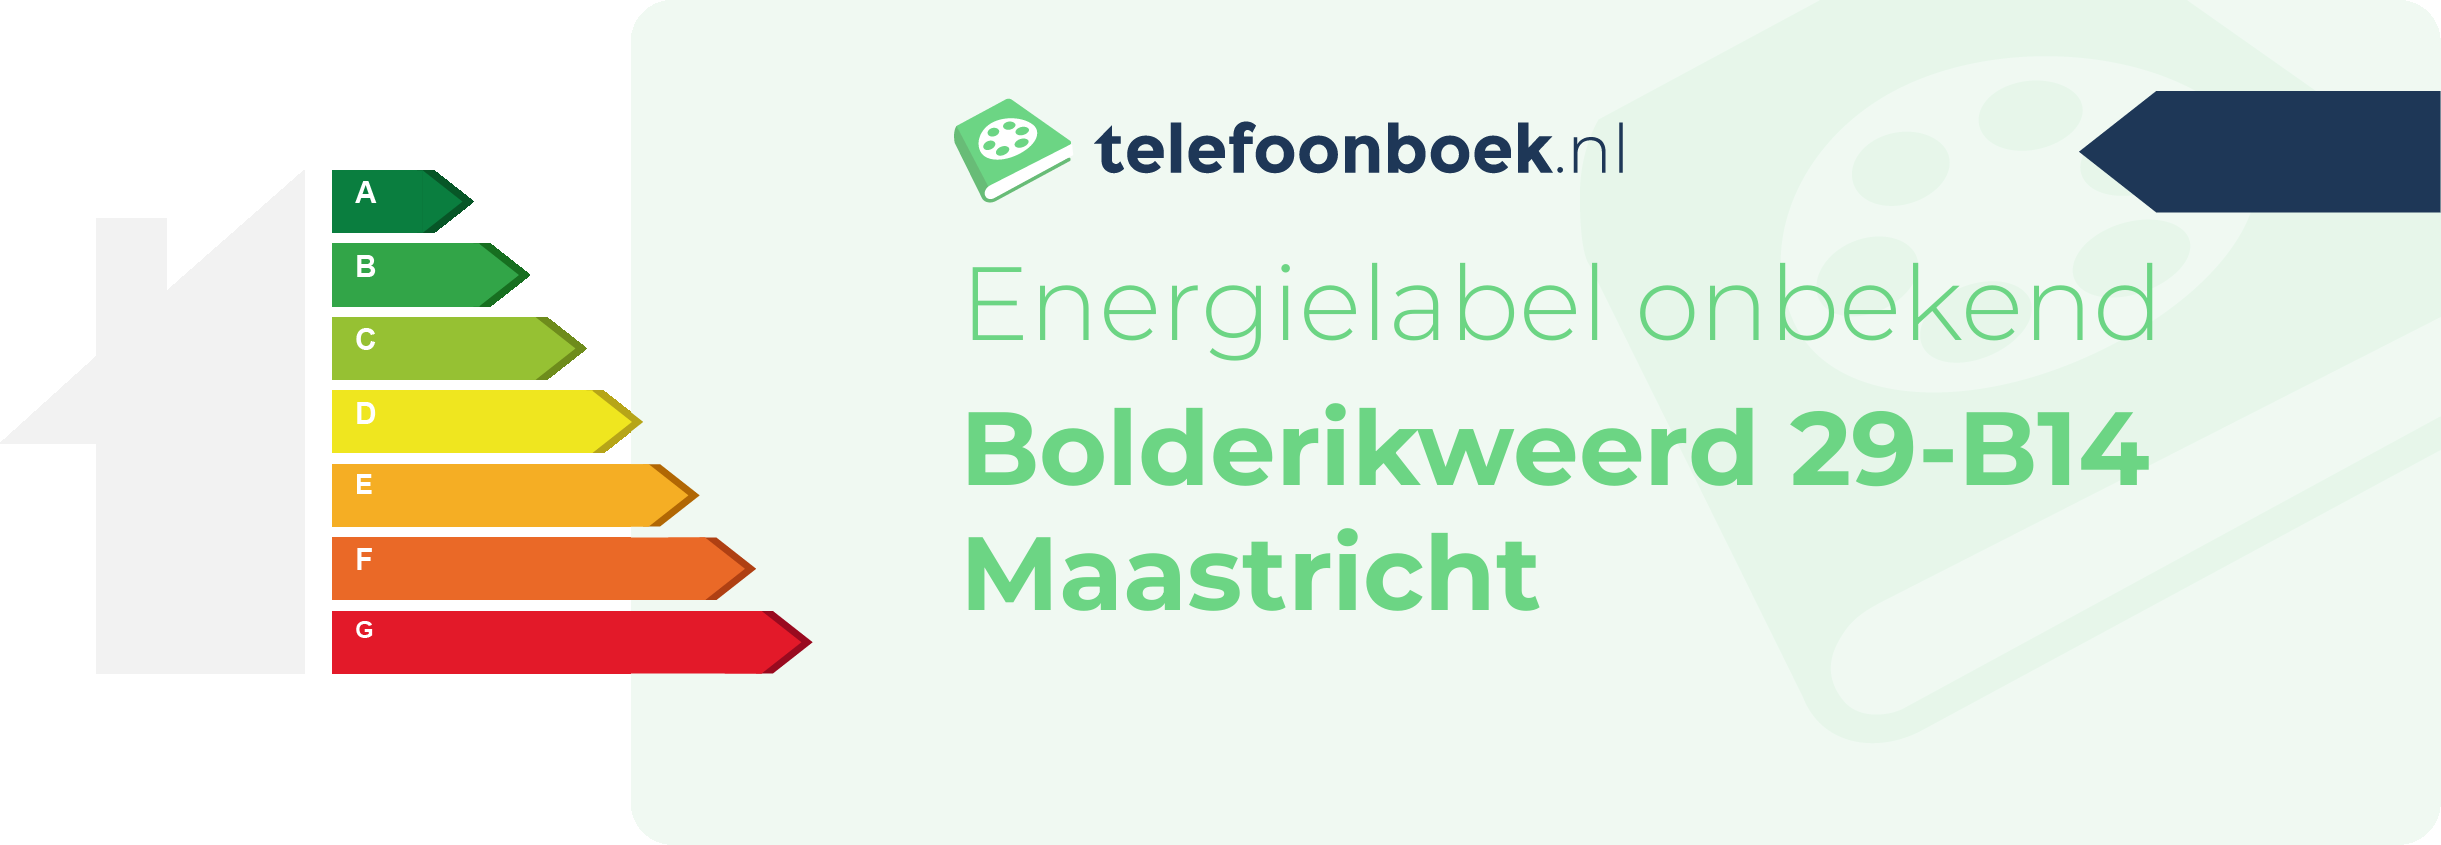 Energielabel Bolderikweerd 29-B14 Maastricht